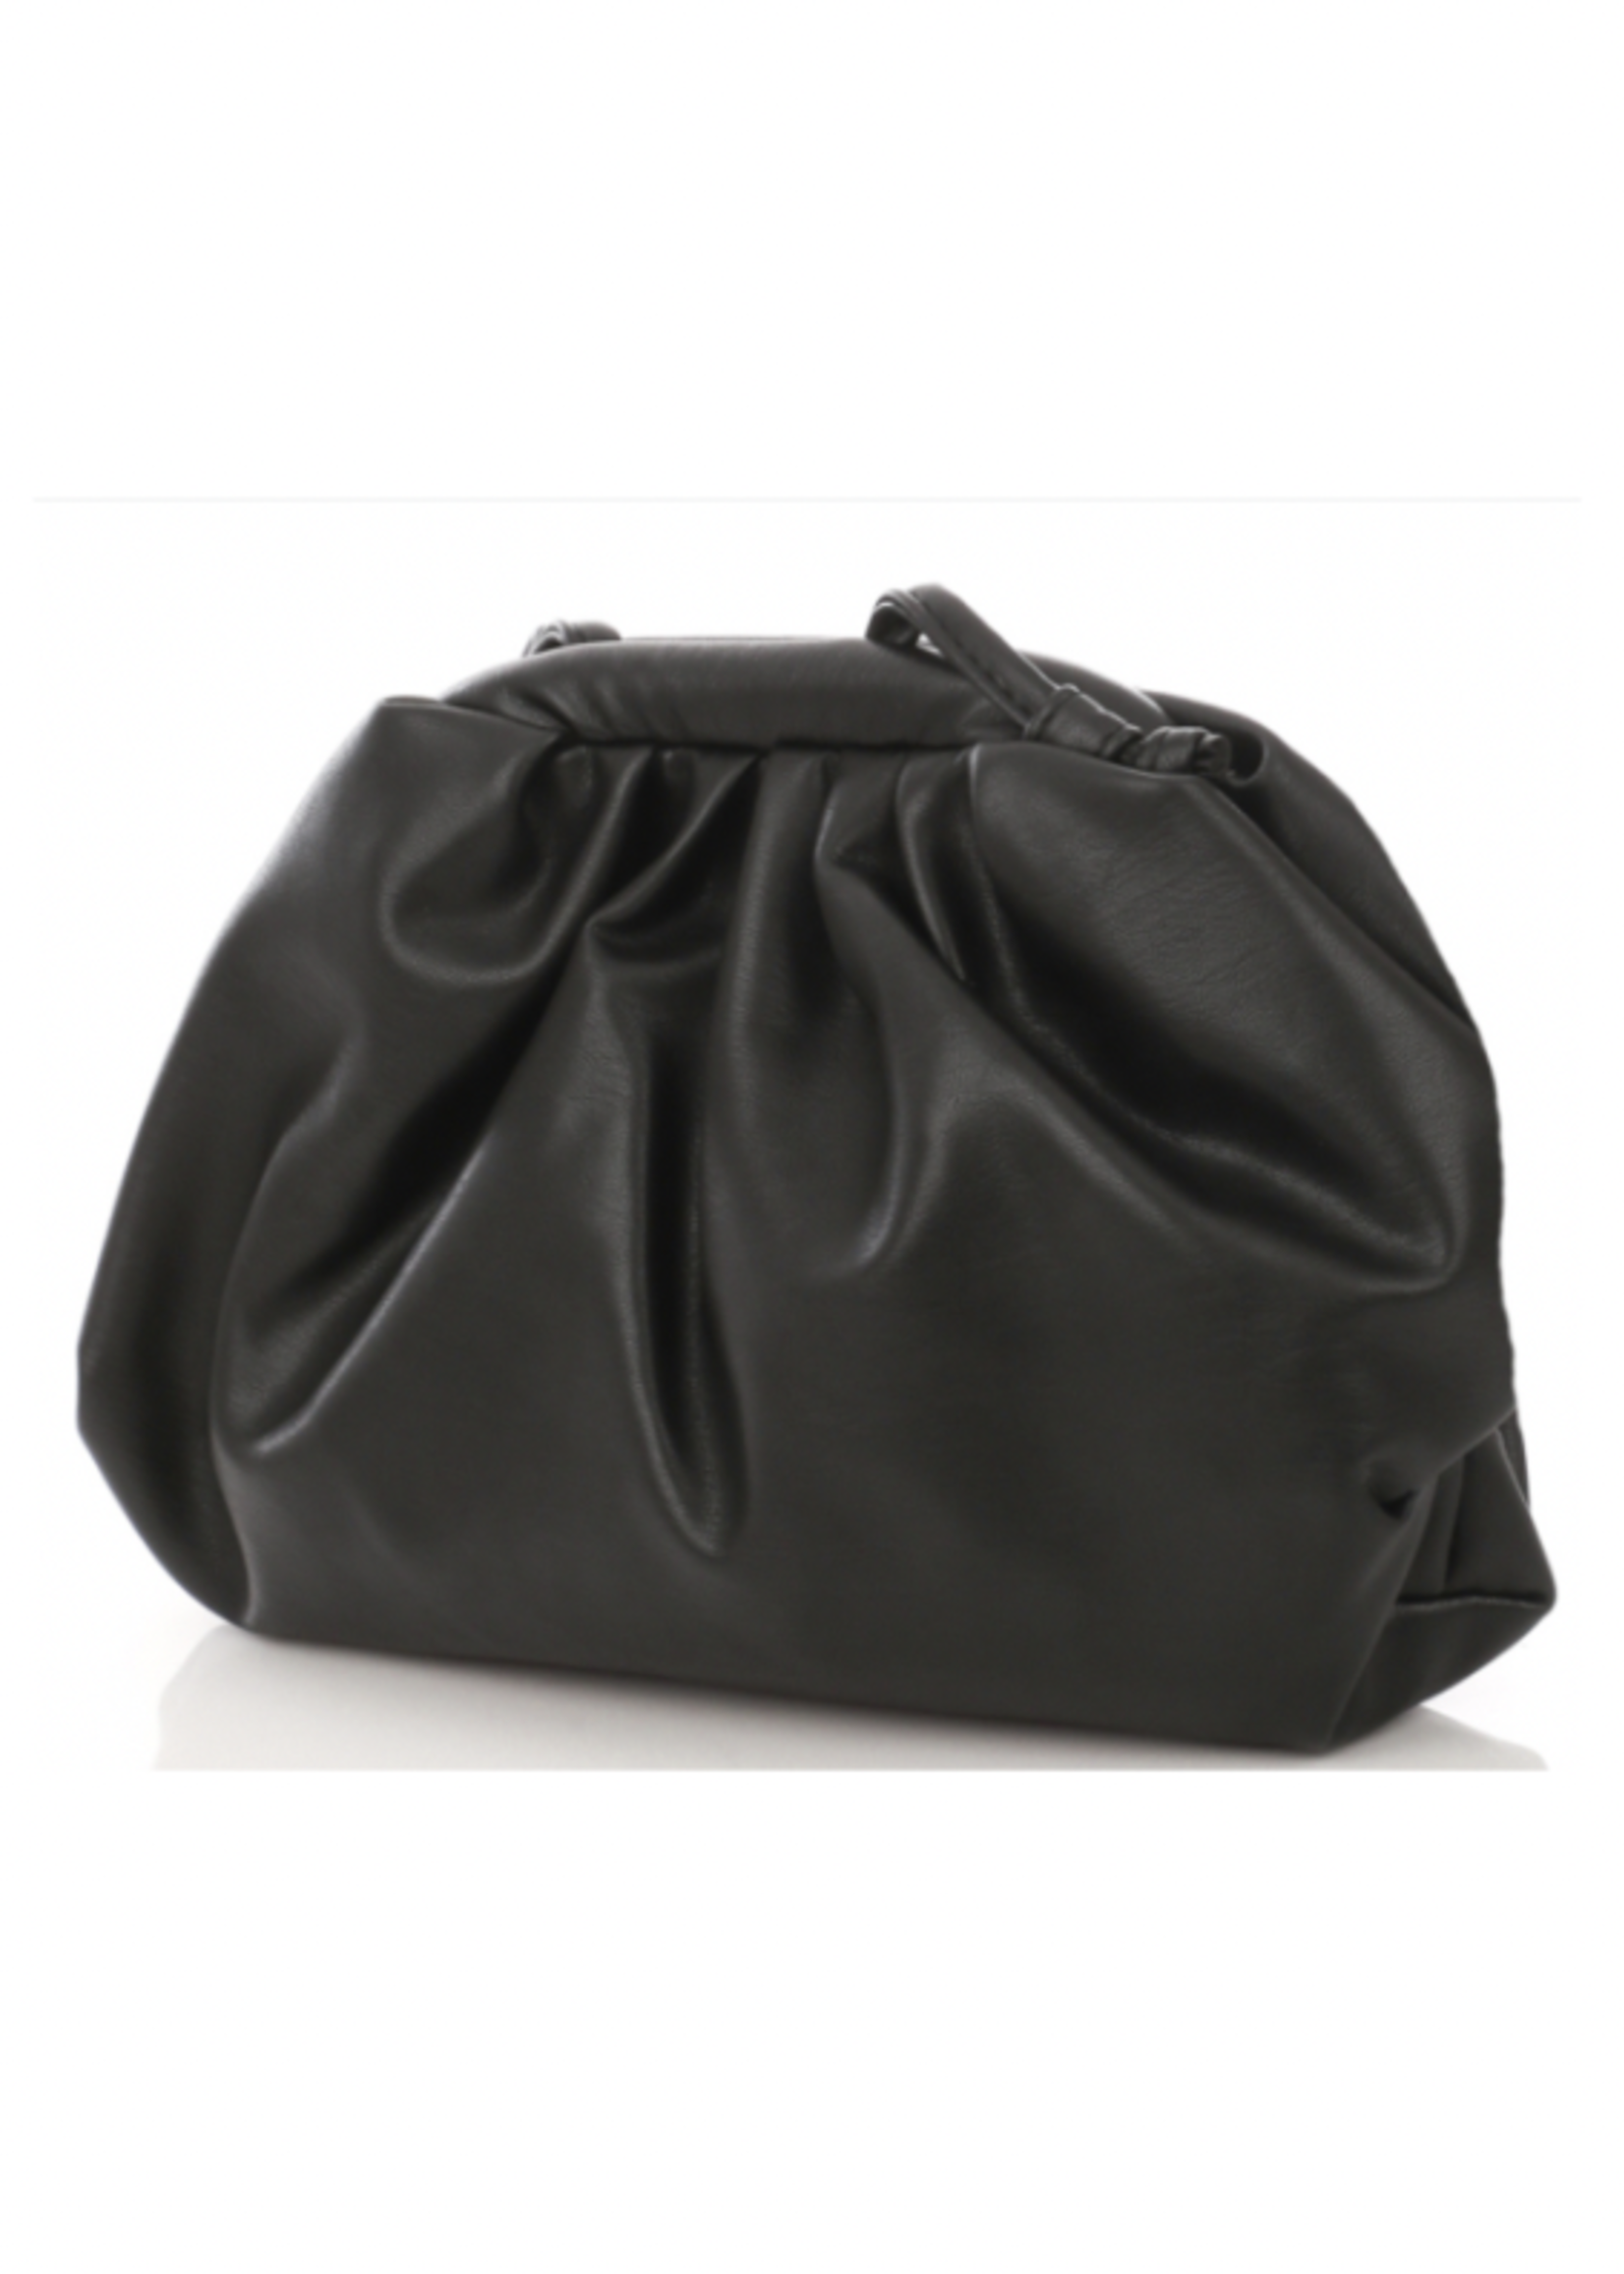 basic black bag